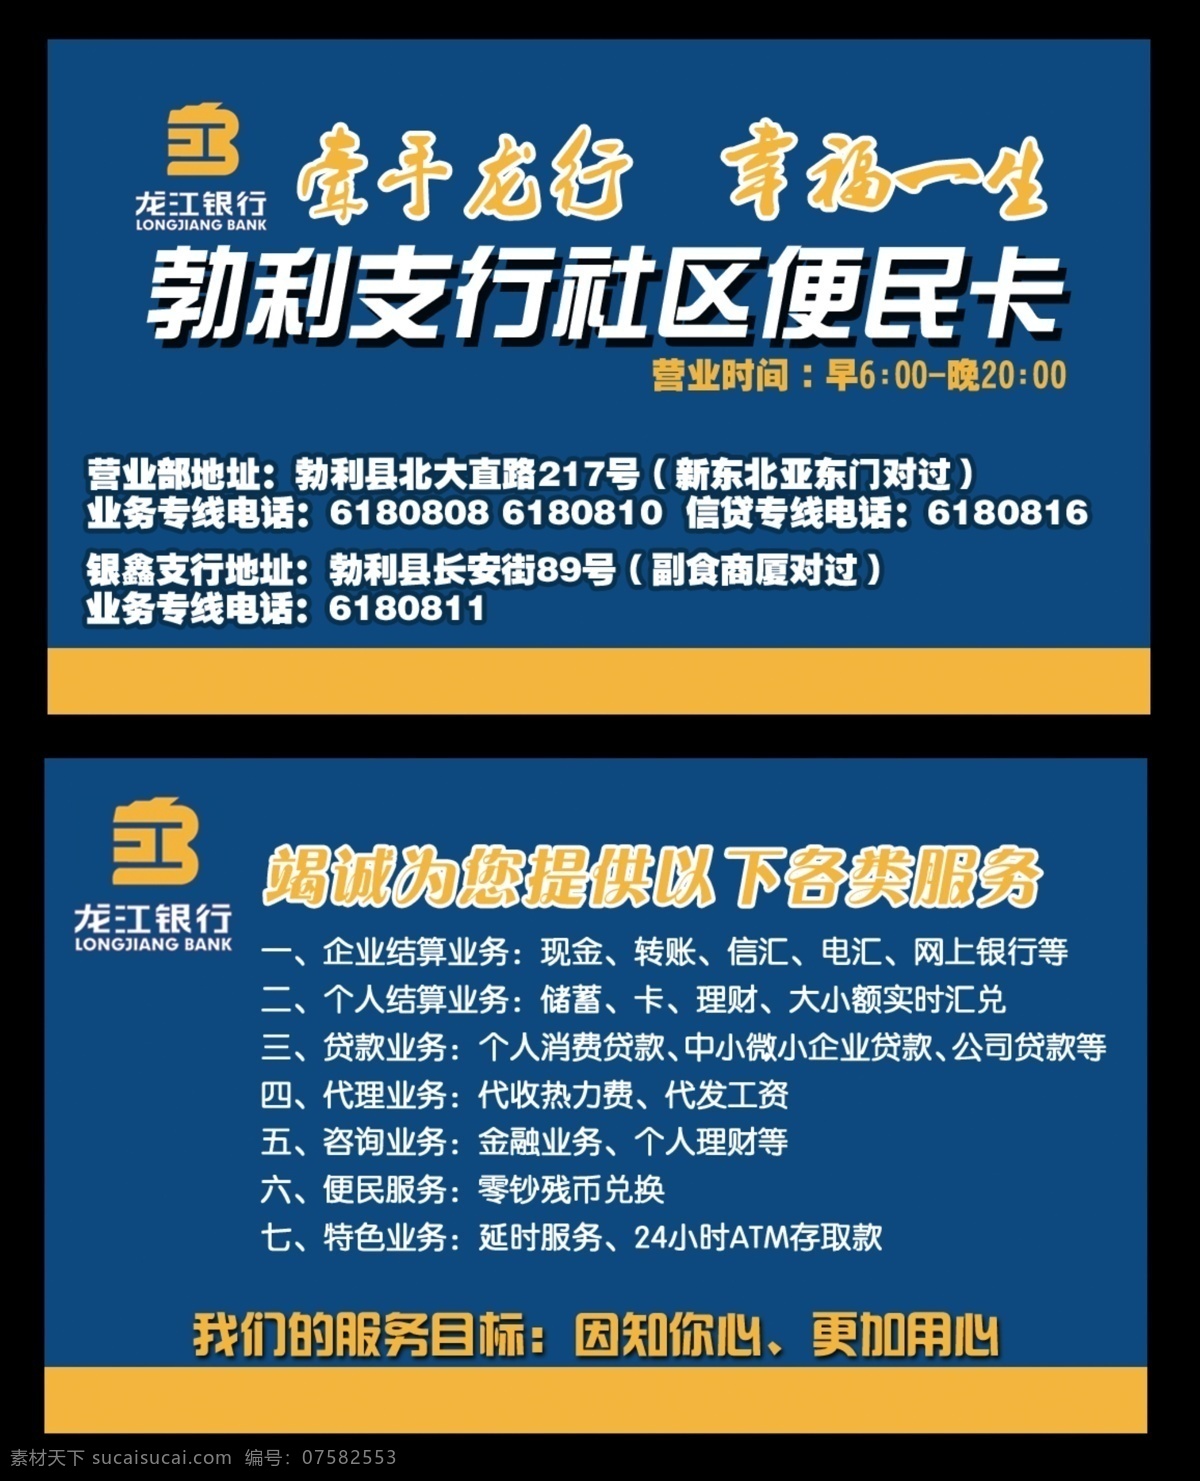 社区便民卡 龙江银行 勃利 支行 金融 服务 高档 名片模板 名片设计 广告设计模板 源文件